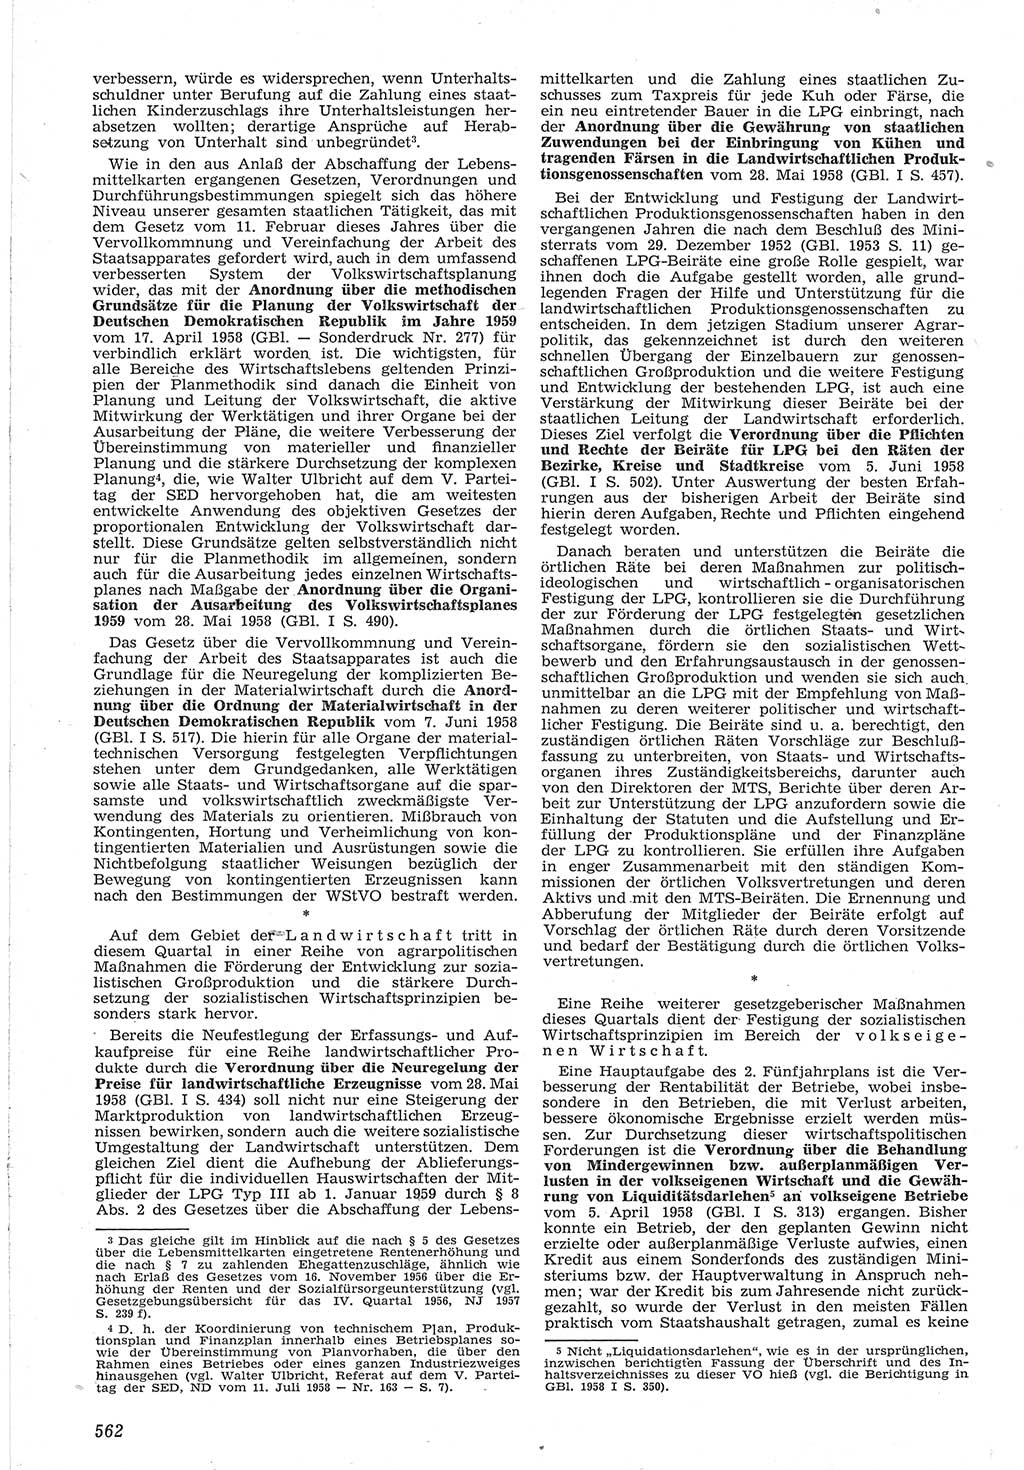 Neue Justiz (NJ), Zeitschrift für Recht und Rechtswissenschaft [Deutsche Demokratische Republik (DDR)], 12. Jahrgang 1958, Seite 562 (NJ DDR 1958, S. 562)